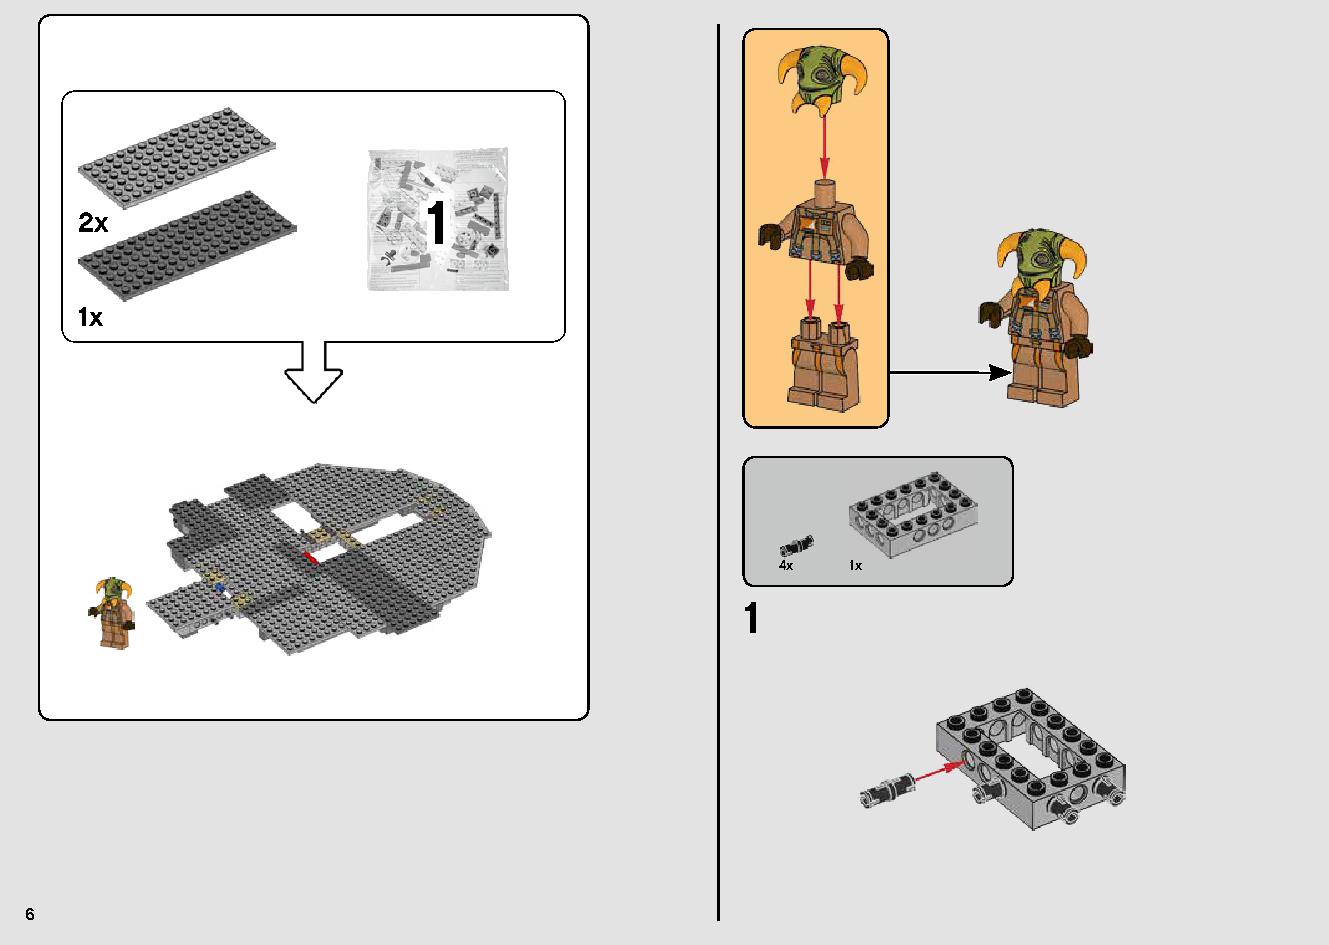 ミレニアム・ファルコン™ 75257 レゴの商品情報 レゴの説明書・組立方法 6 page